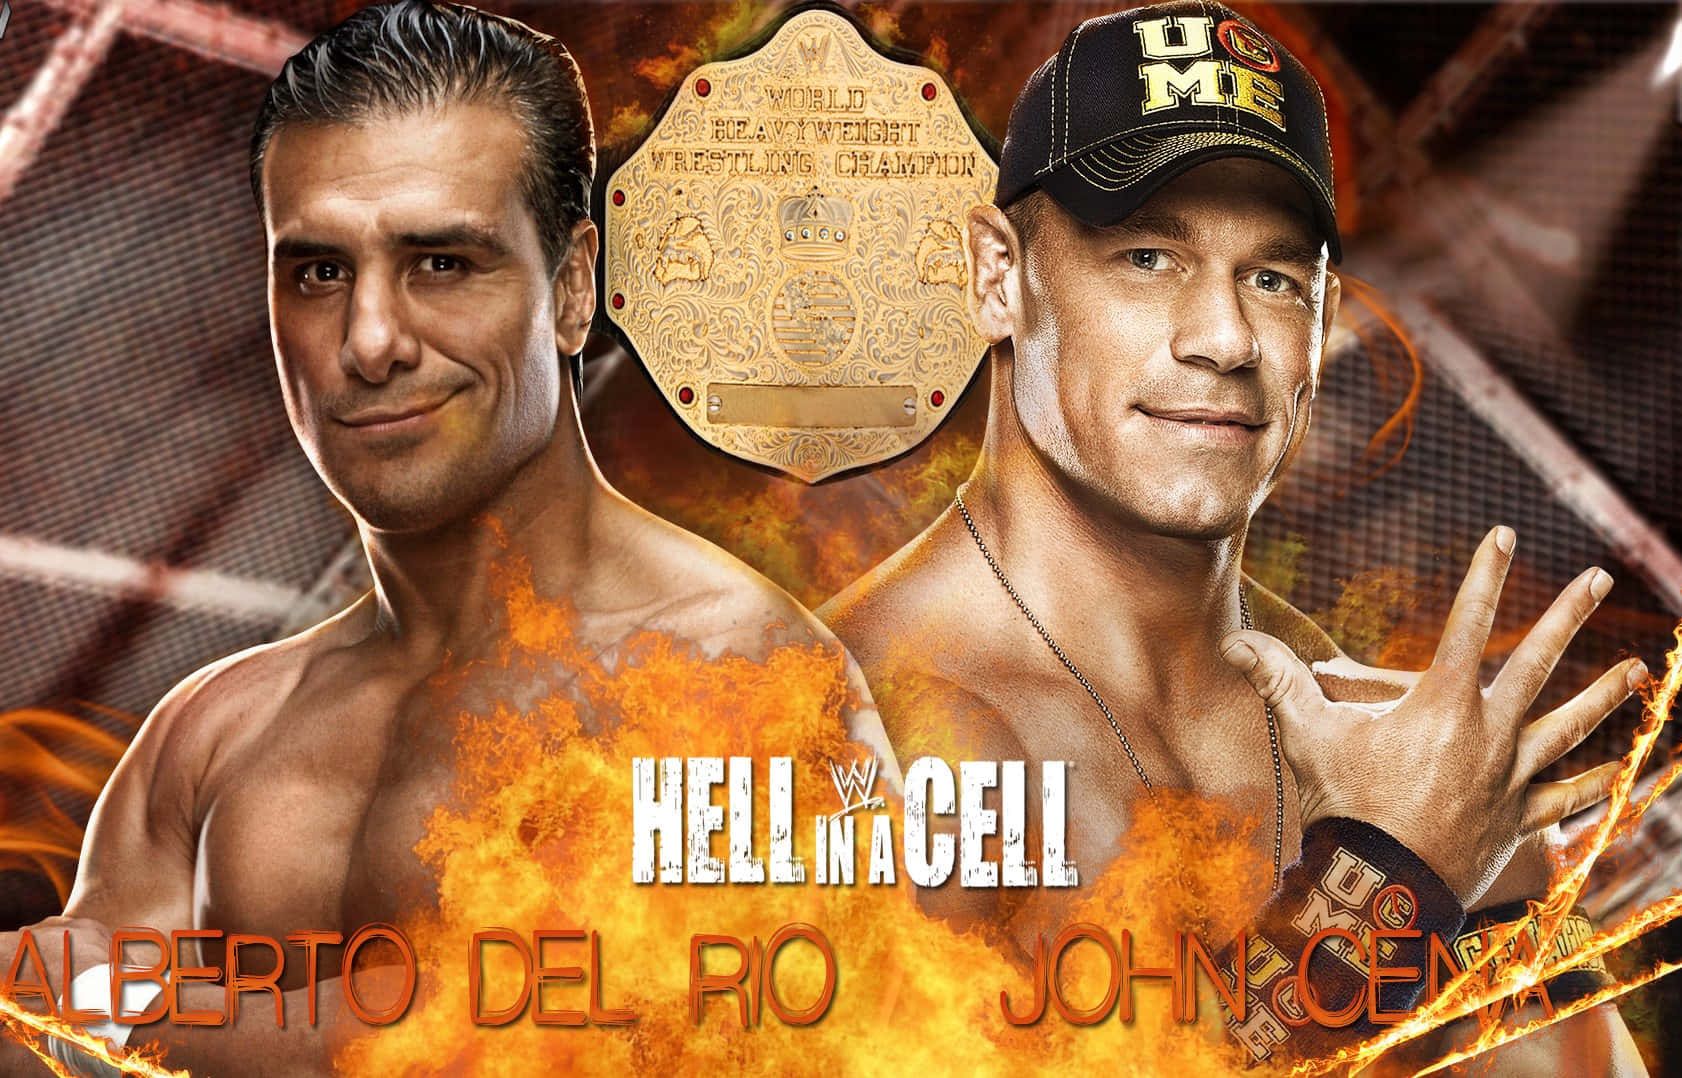 Albertodel Rio Und John Cena Poster Wallpaper